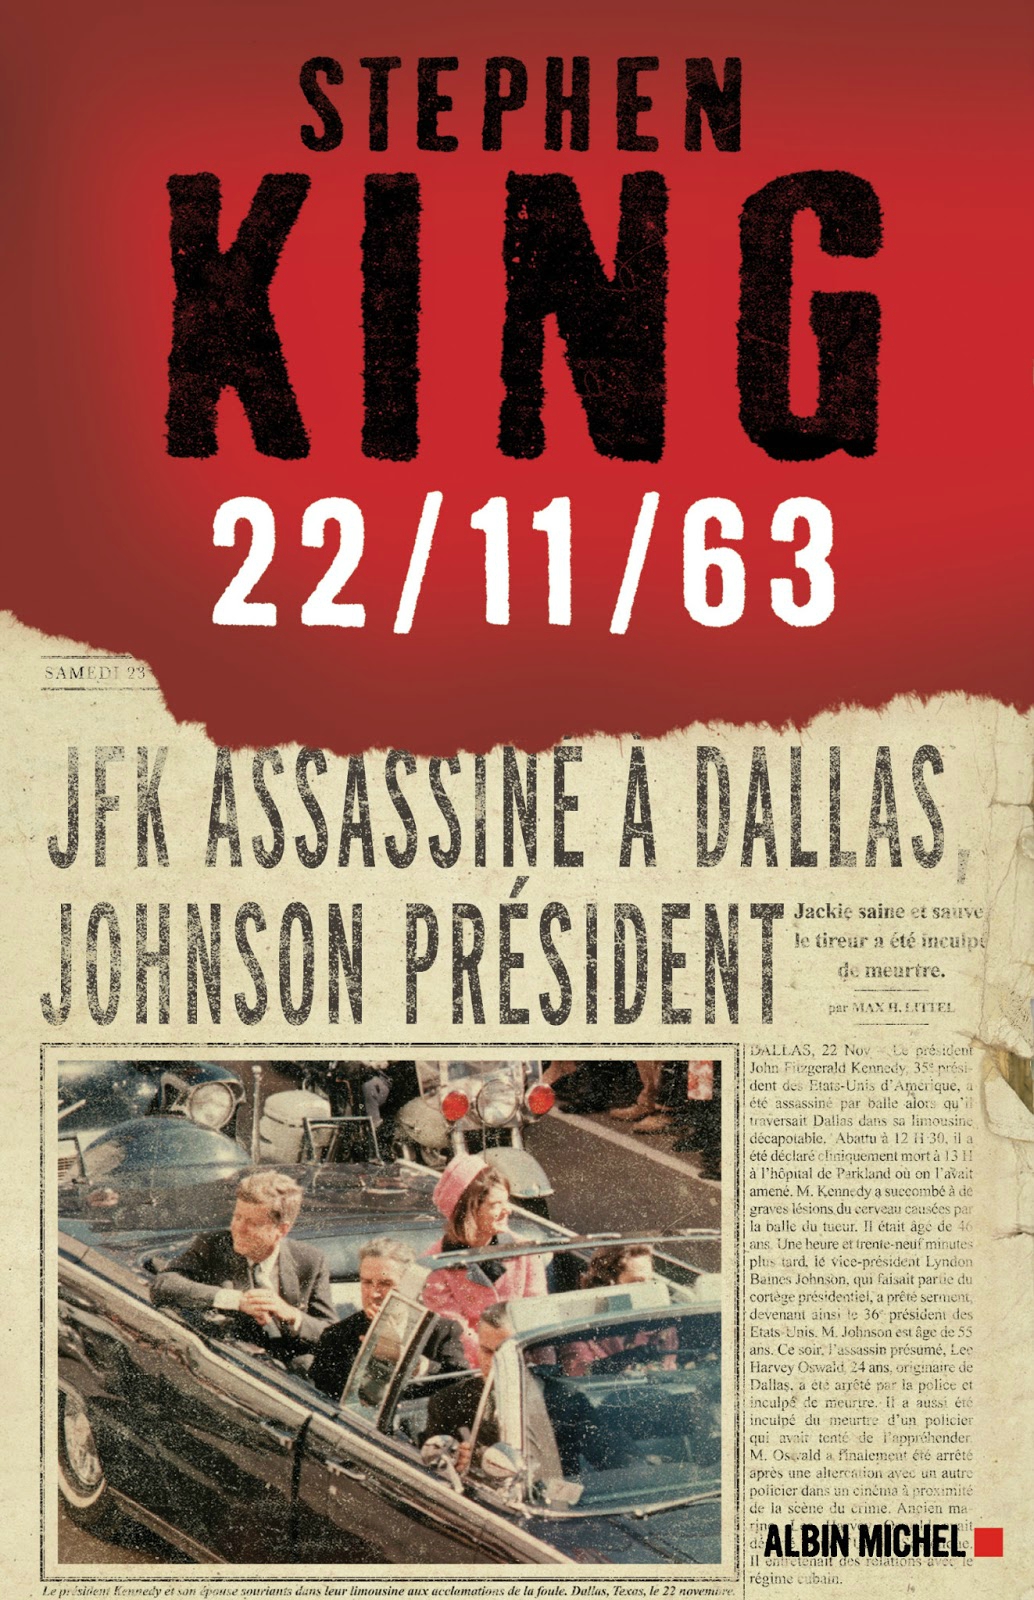 jj abrams - 11/22/63, le roman de Stephen King adapté par J.J. Abrams 22 11 63